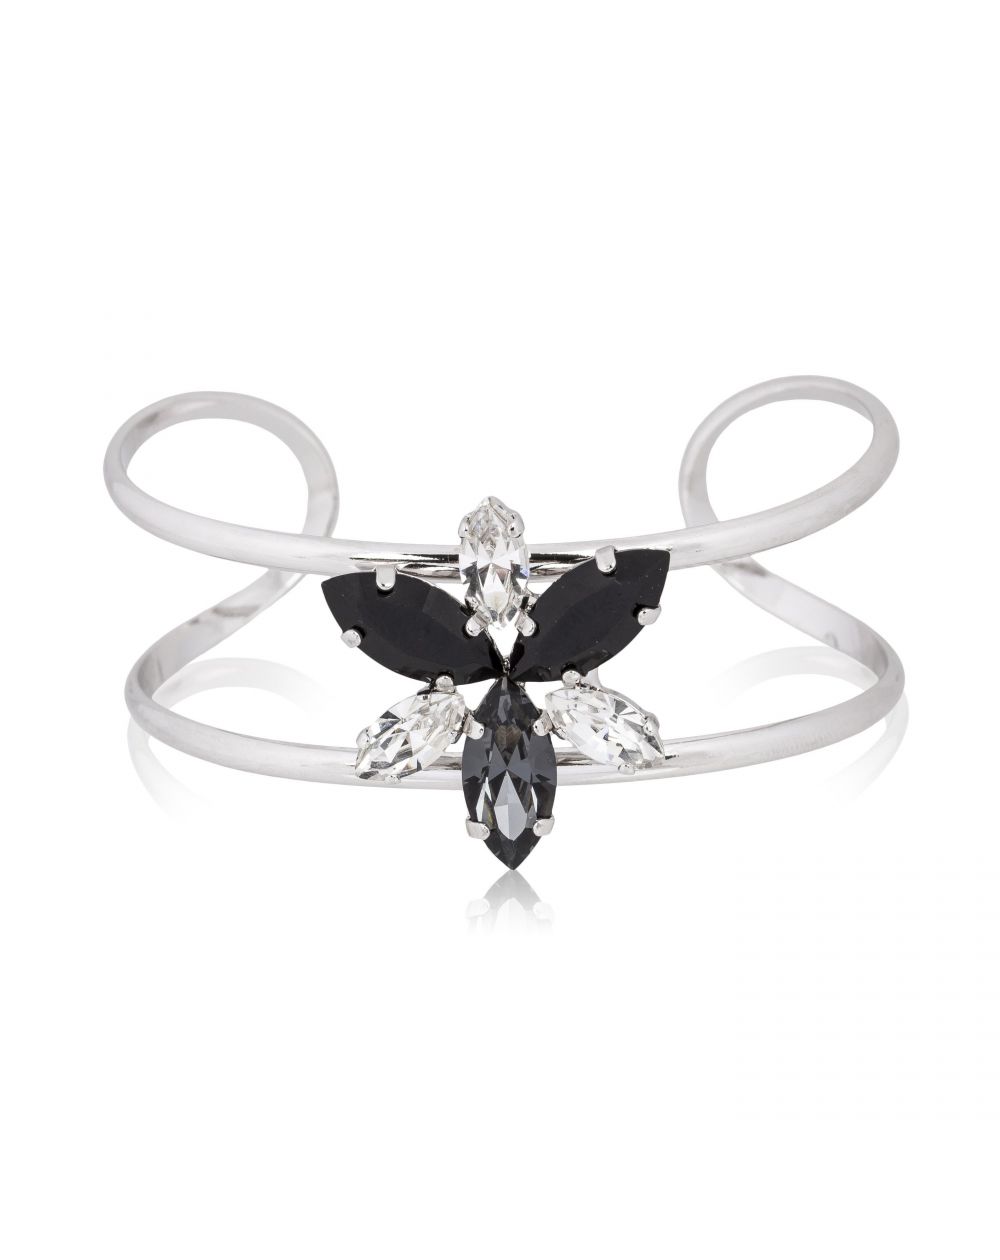 Andrea Marazzini bijoux - Bracelet cristal Swarovski Navette Noir/Blanc